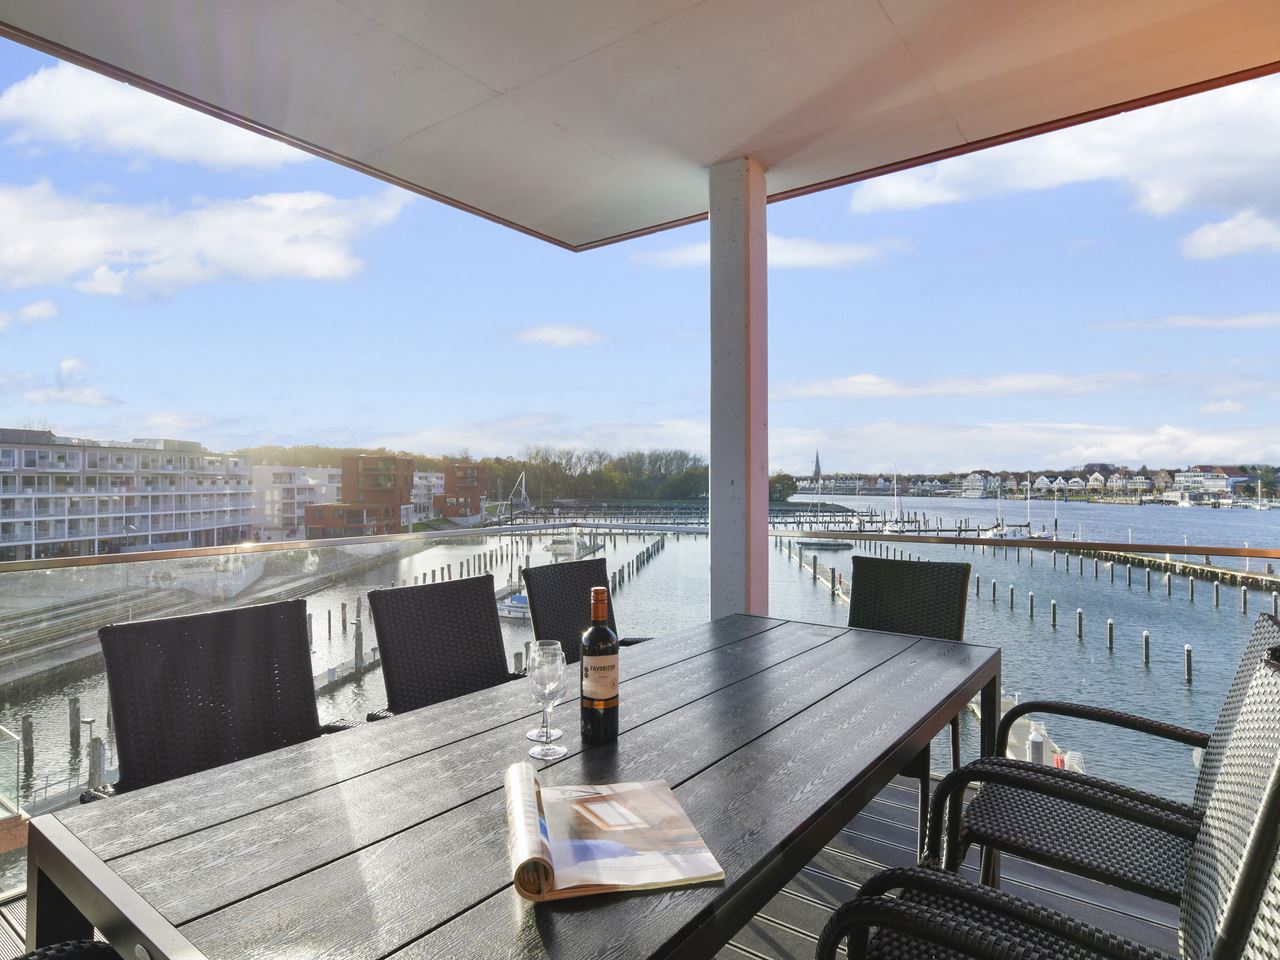 Luxus 6-8-Personen-Ferienwohnung Passatvilla im Fe Ferienwohnung an der Ostsee